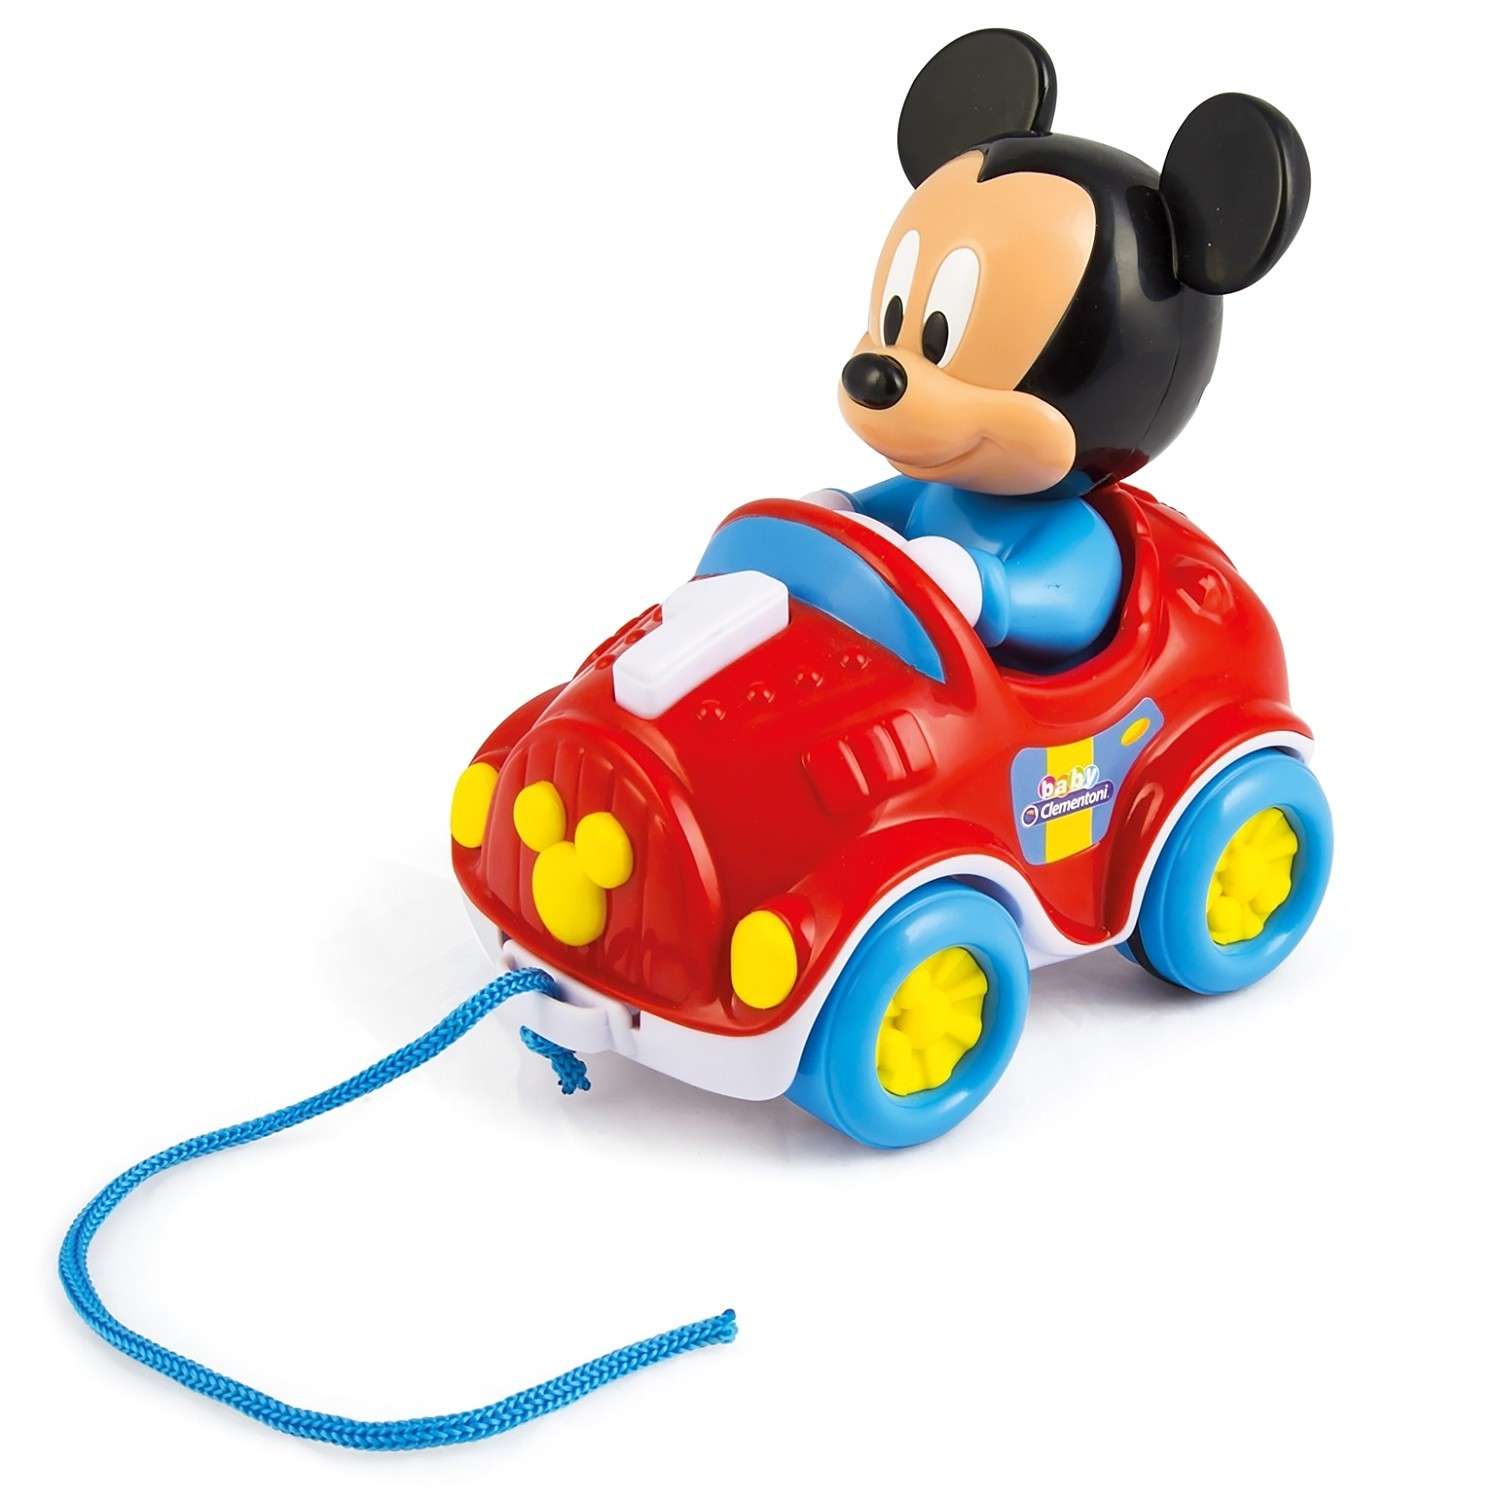 Игрушка развивающая Clementoni Машина Микки Мауса Cl 17208 - фото 1